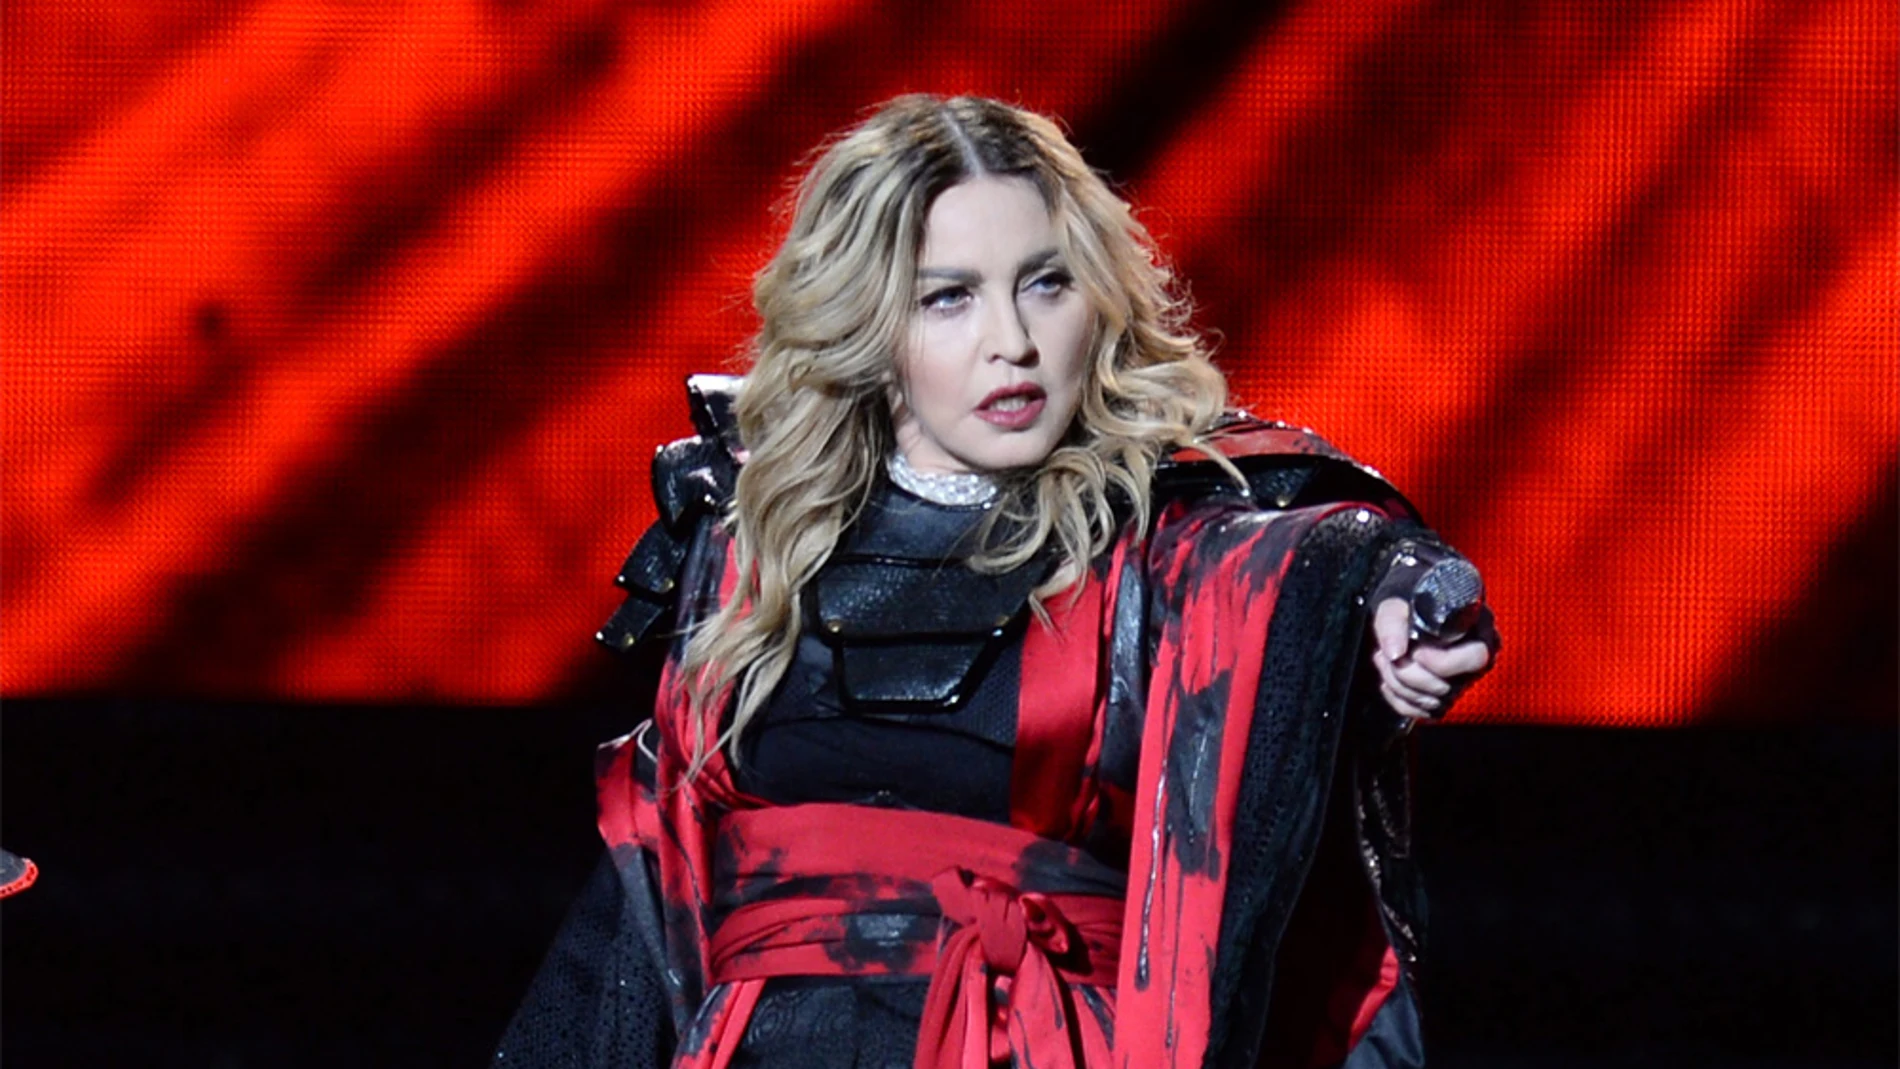 Madonna bromea con hacer una felación a los hombres que voten por Hillary Clinton